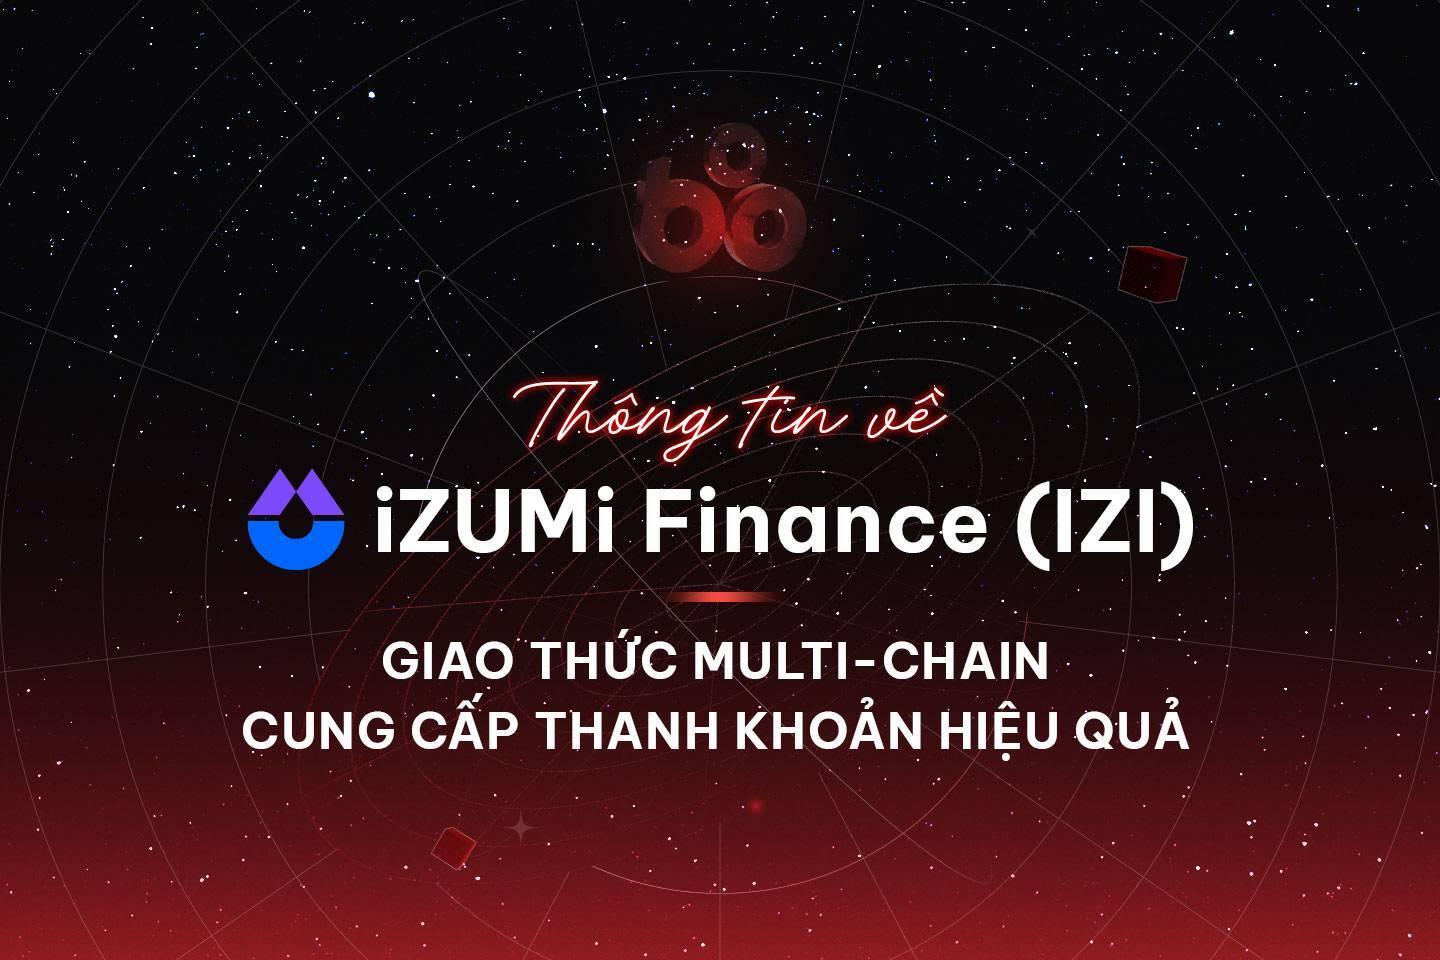 thong-tin-ve-izumi-finance-izi-giao-thuc-multi-chain-cung-cap-thanh-khoan-hieu-qua